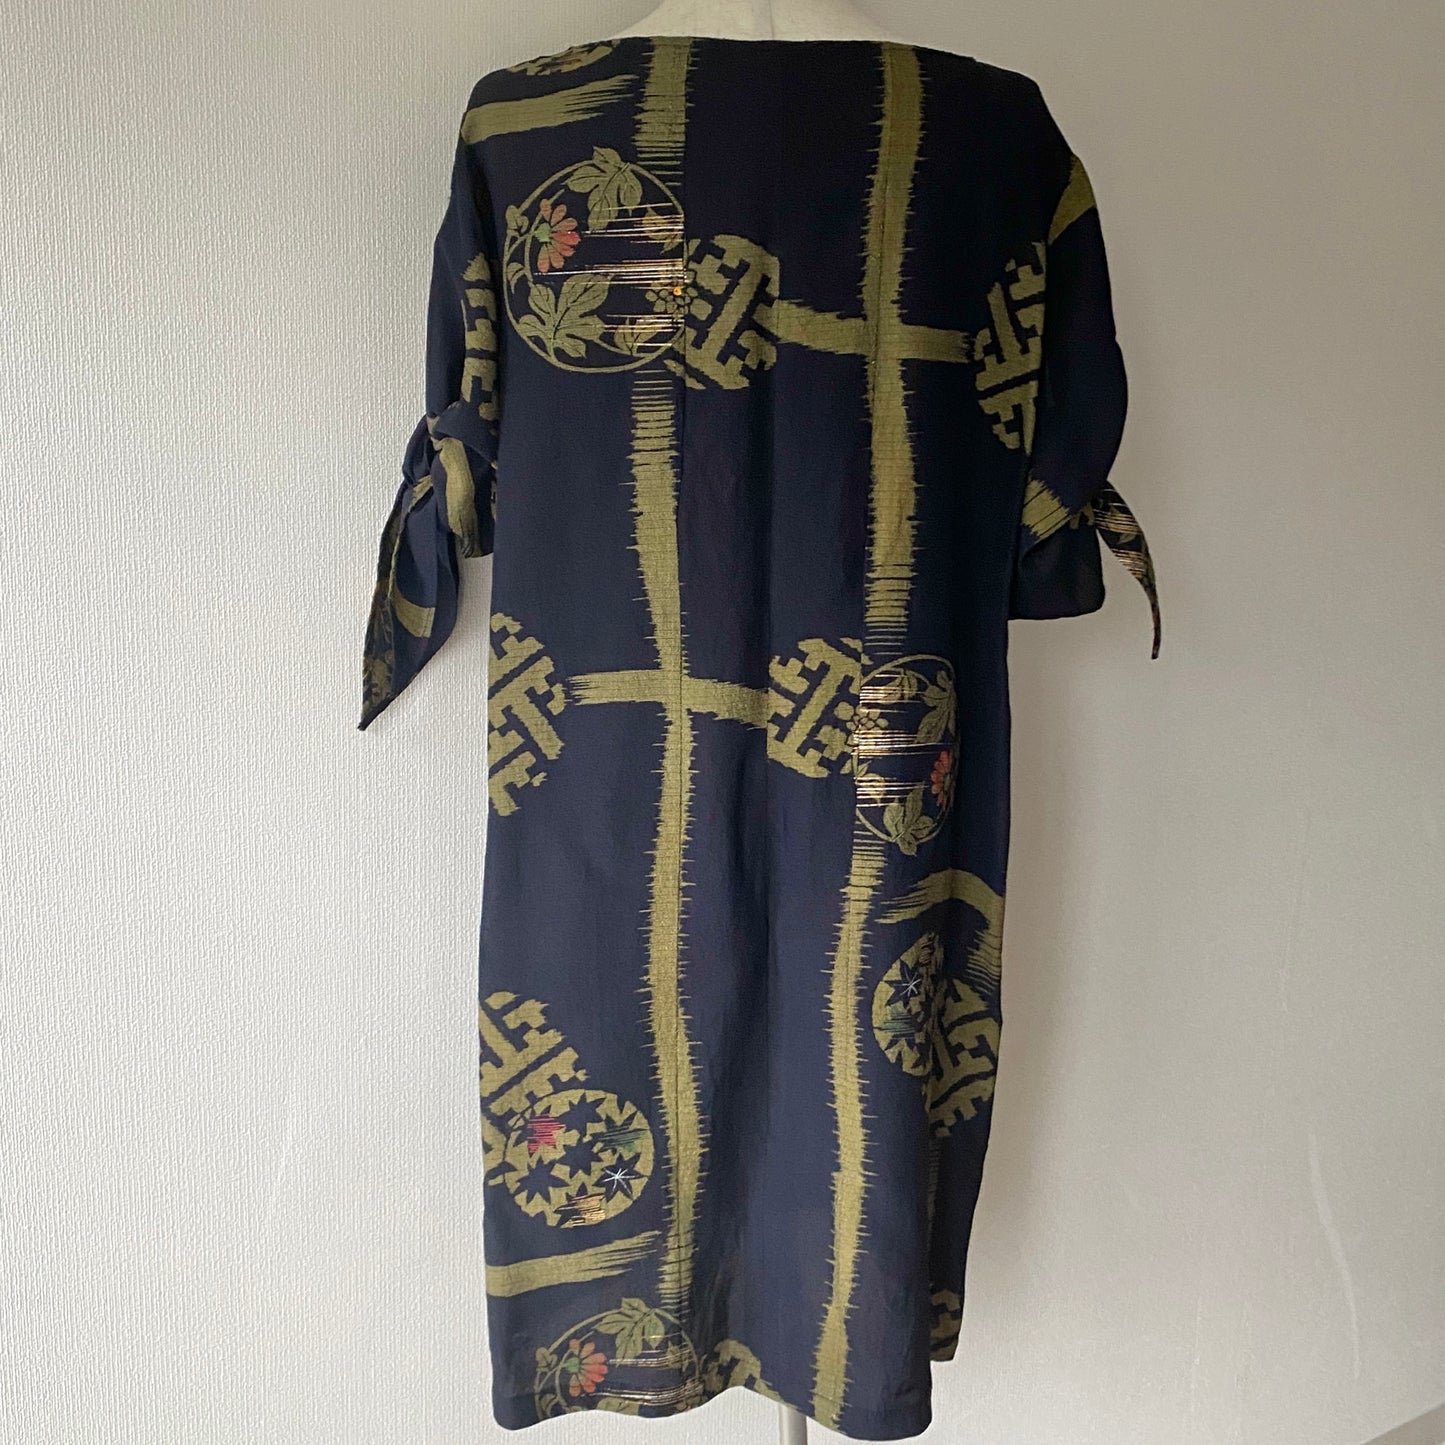 Kimono robe, komon 小紋, fabriquée à la main, recyclée